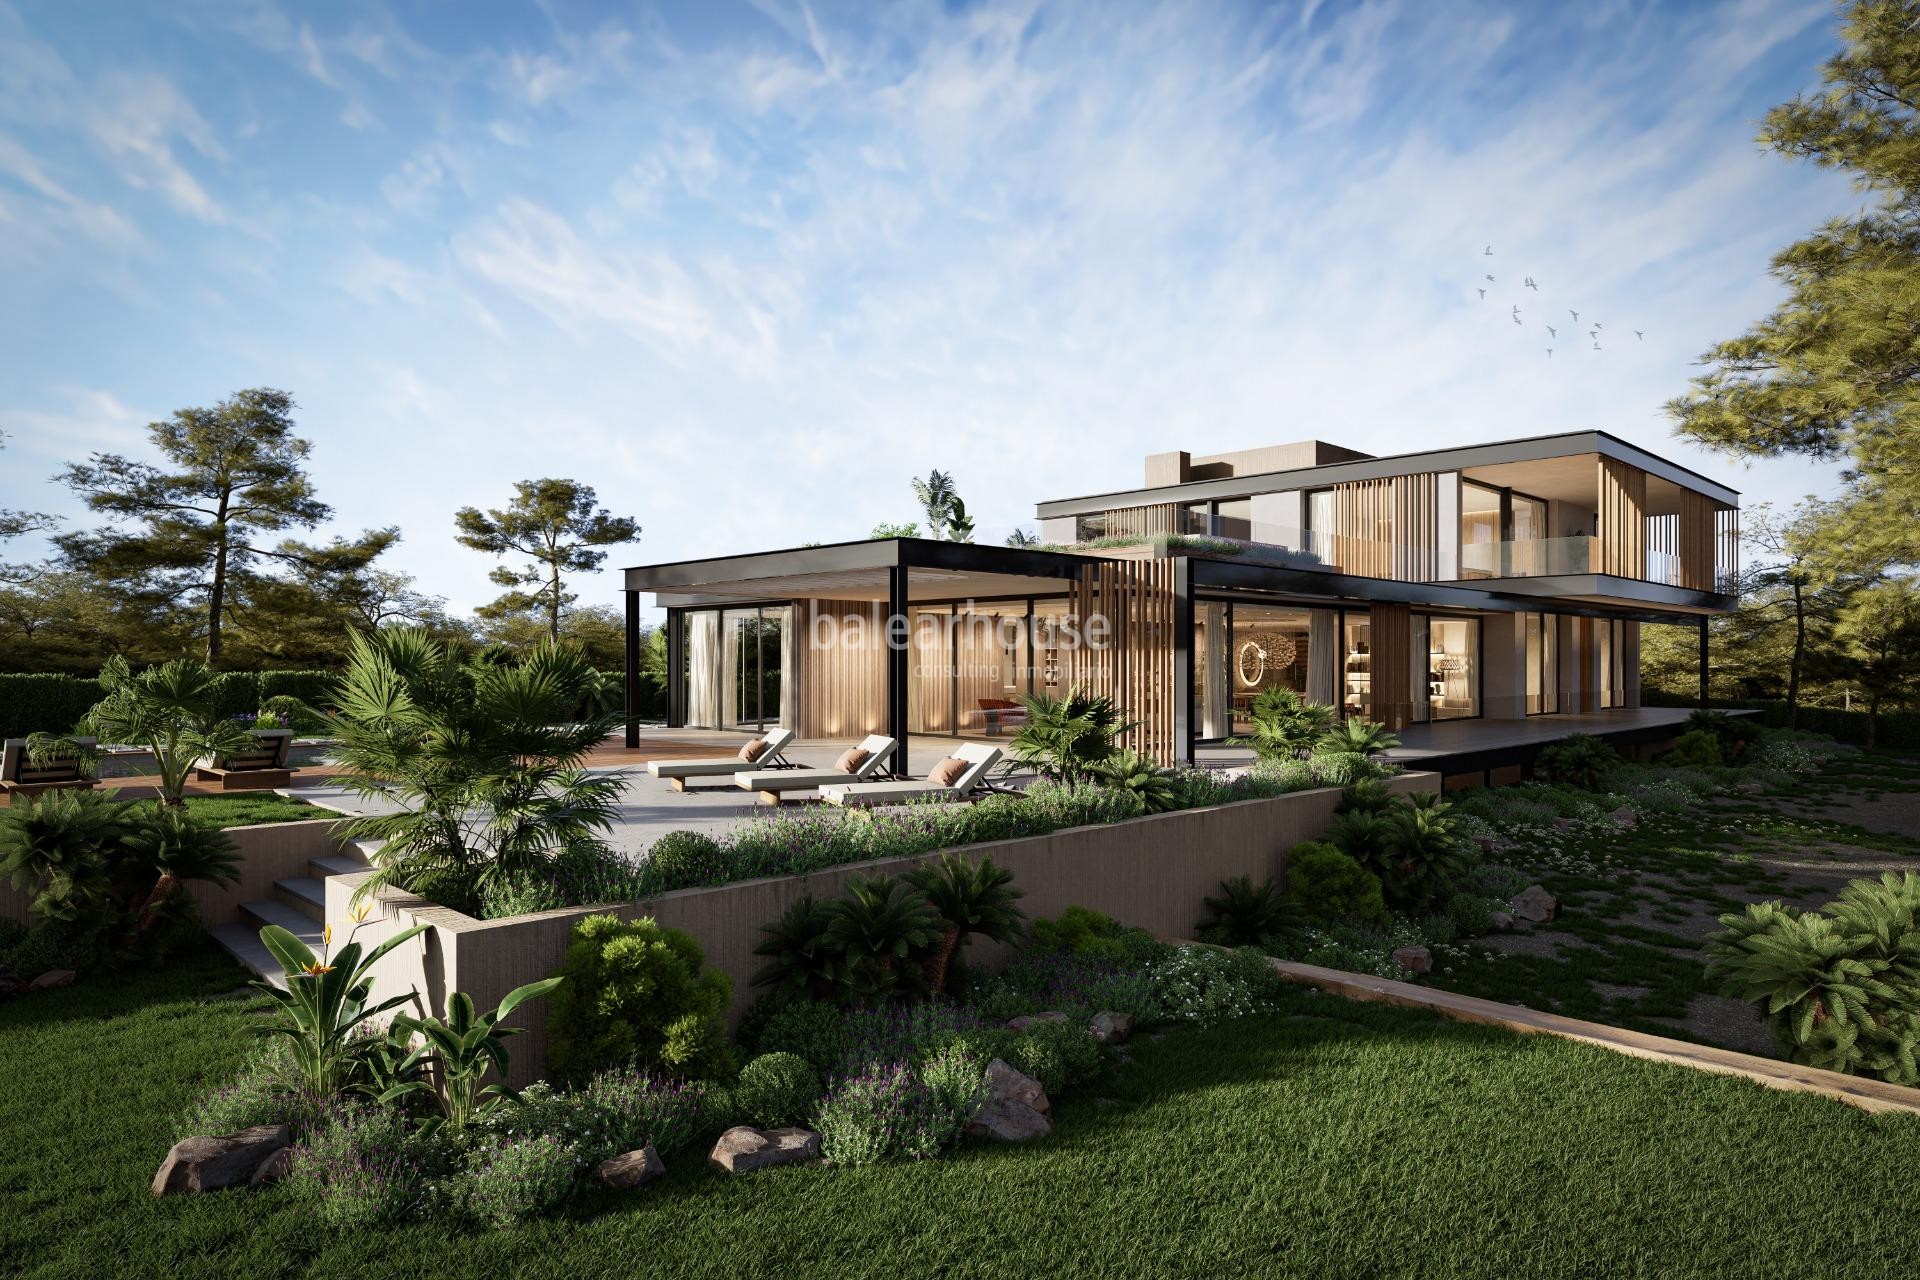 Grundstück in der hervorragenden Gegend von Sol de Mallorca mit Projekt für eine große moderne Villa